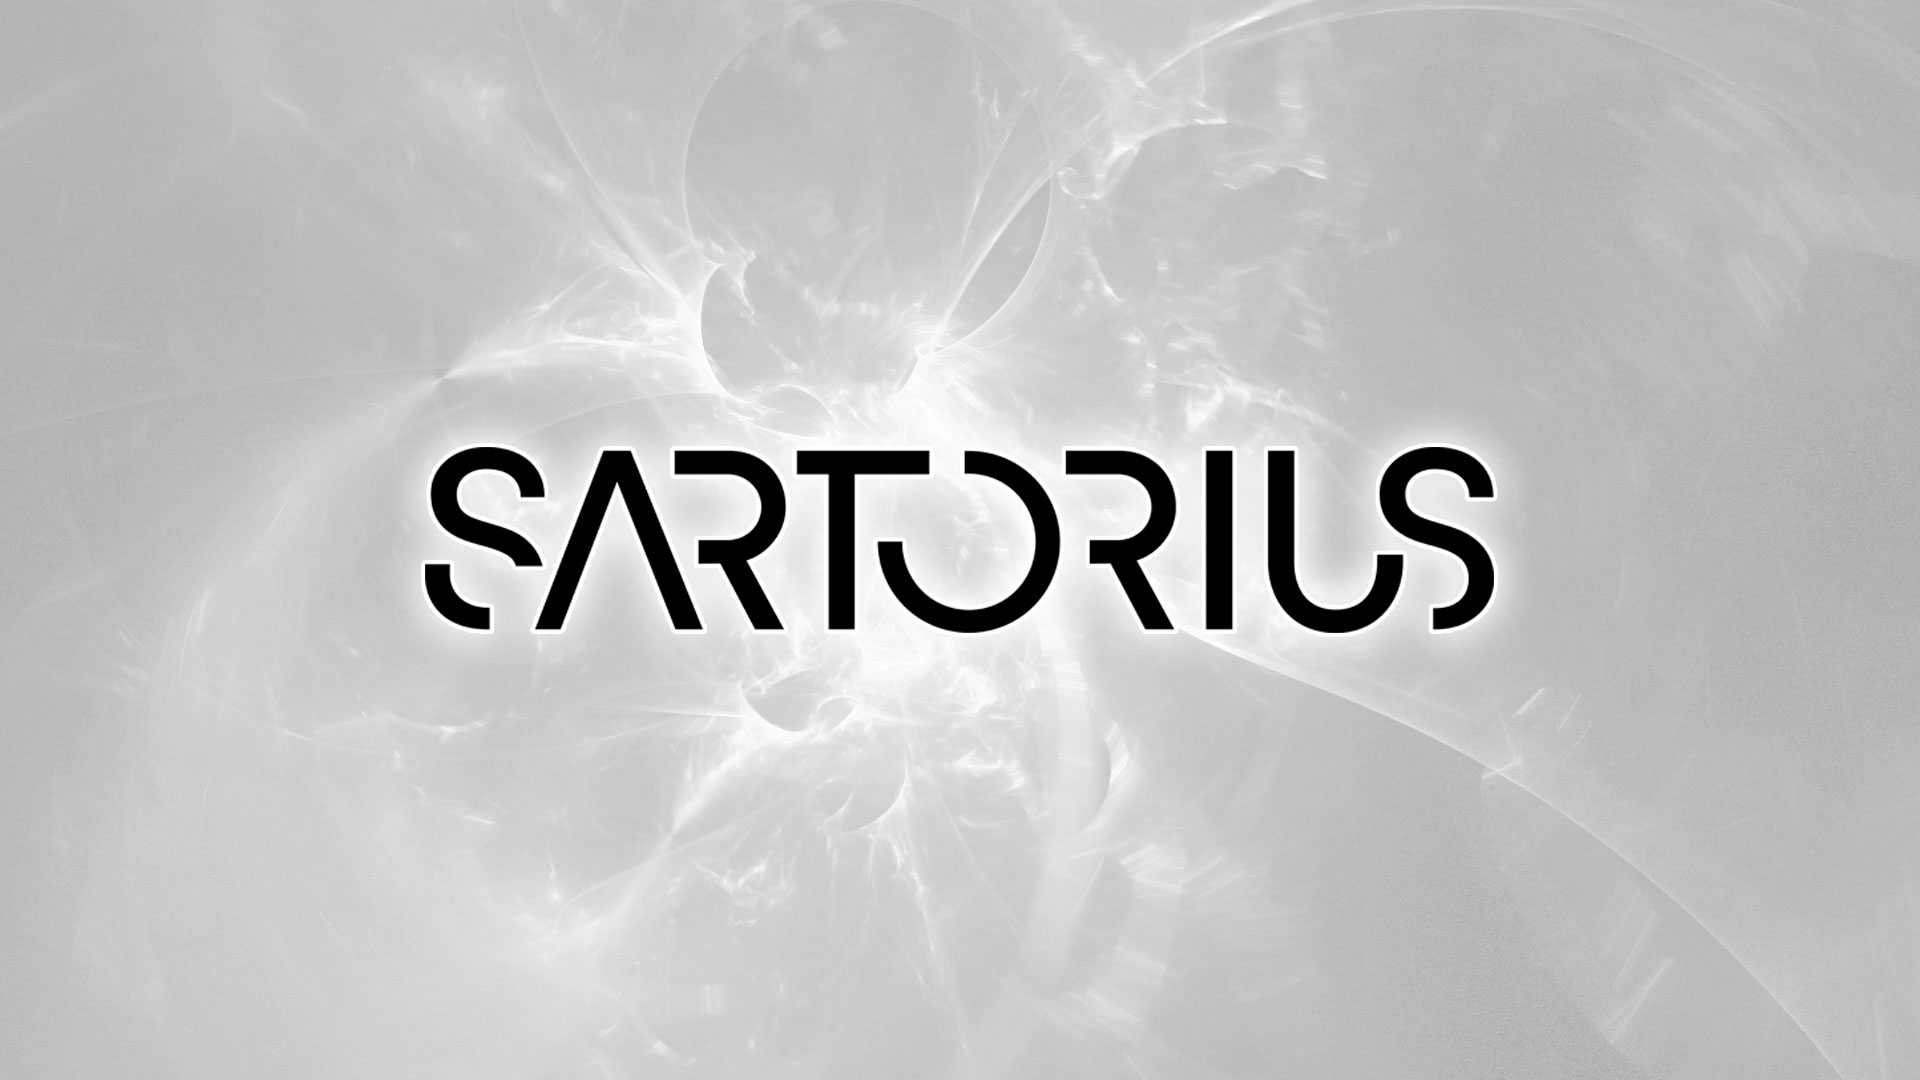 Sartorius